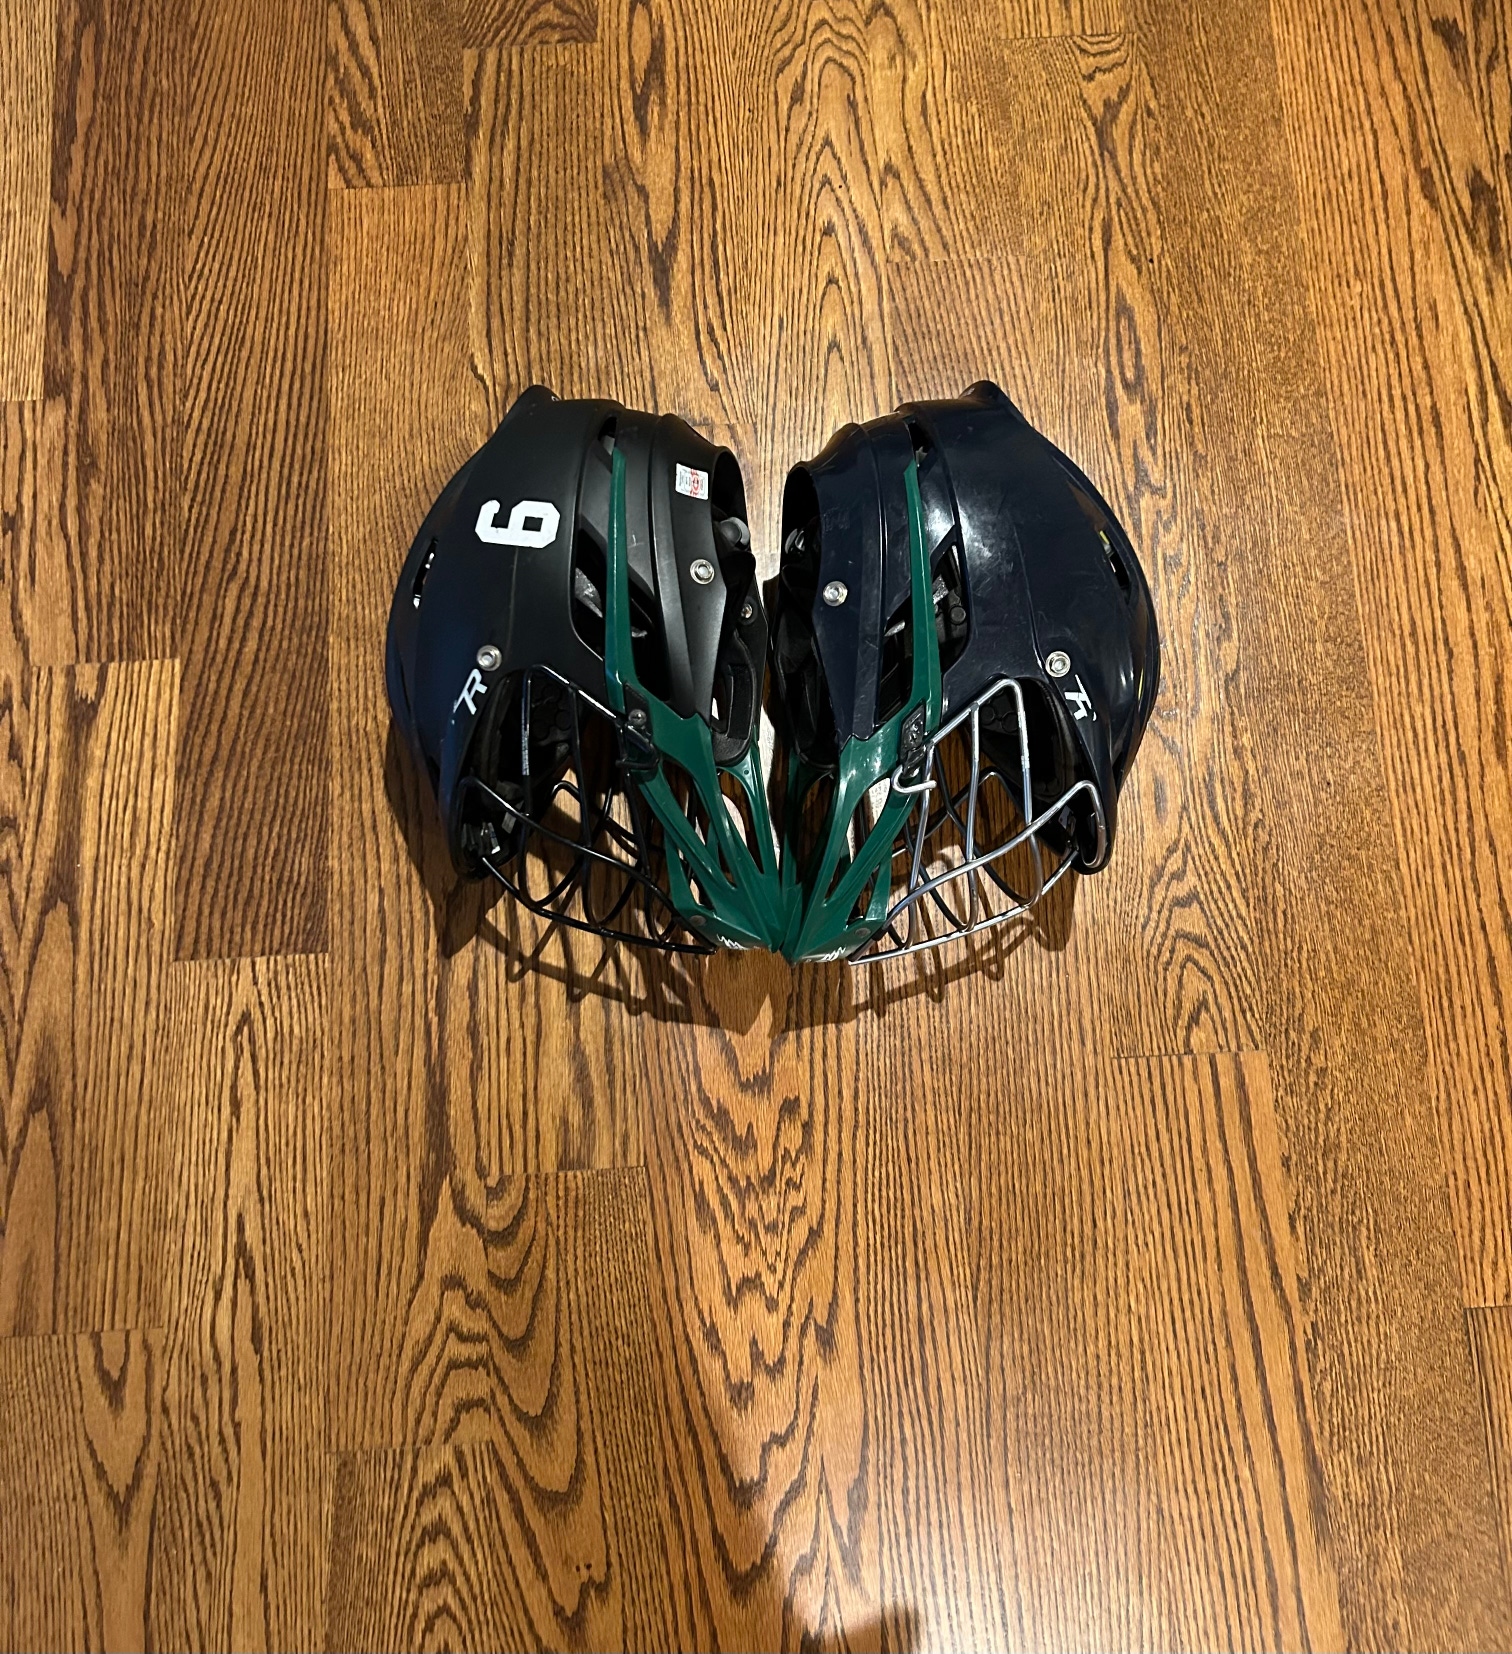 Cascade Lacrosse Helmets